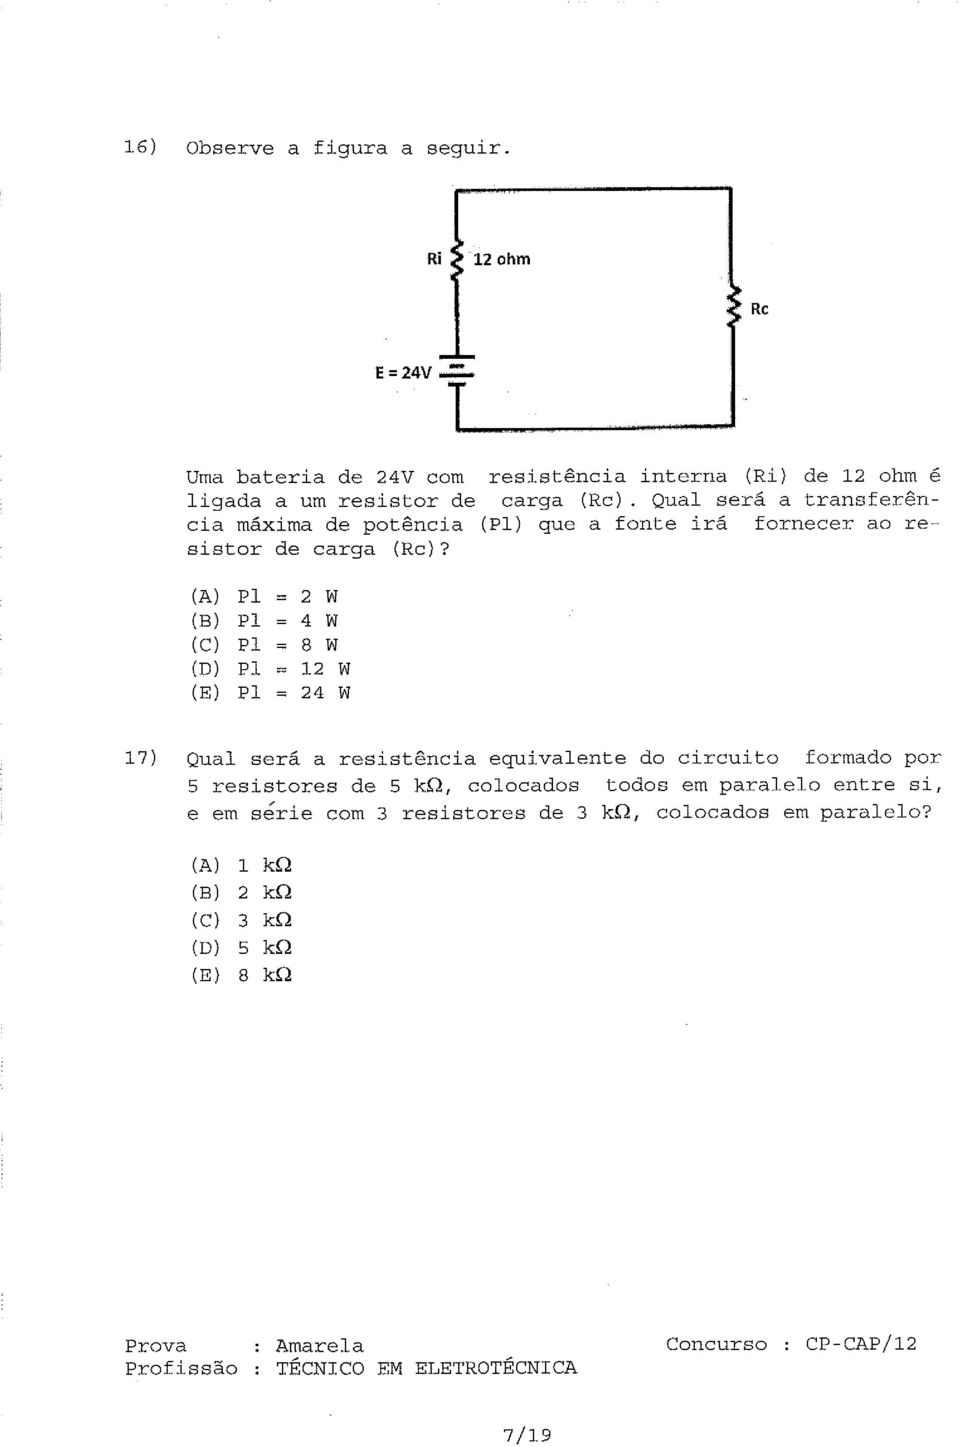 Qual será a transferência máxima de potência (Pl) que a fonte irá fornecer ao resistor de carga (Rc)?